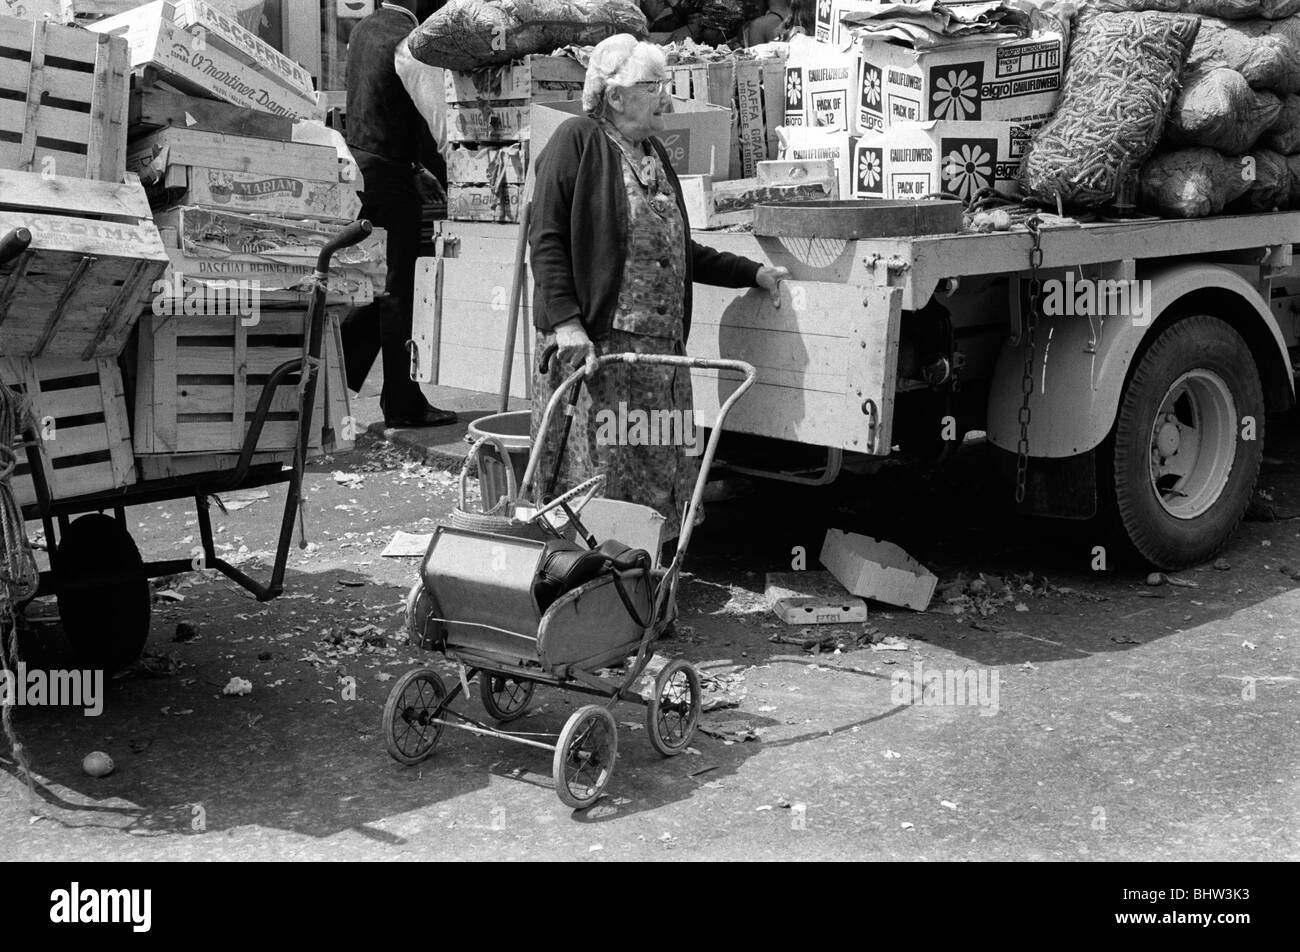 Senior pensioner going shopping Notting Hill west London UK 1975  HOMER SYKES Stock Photo